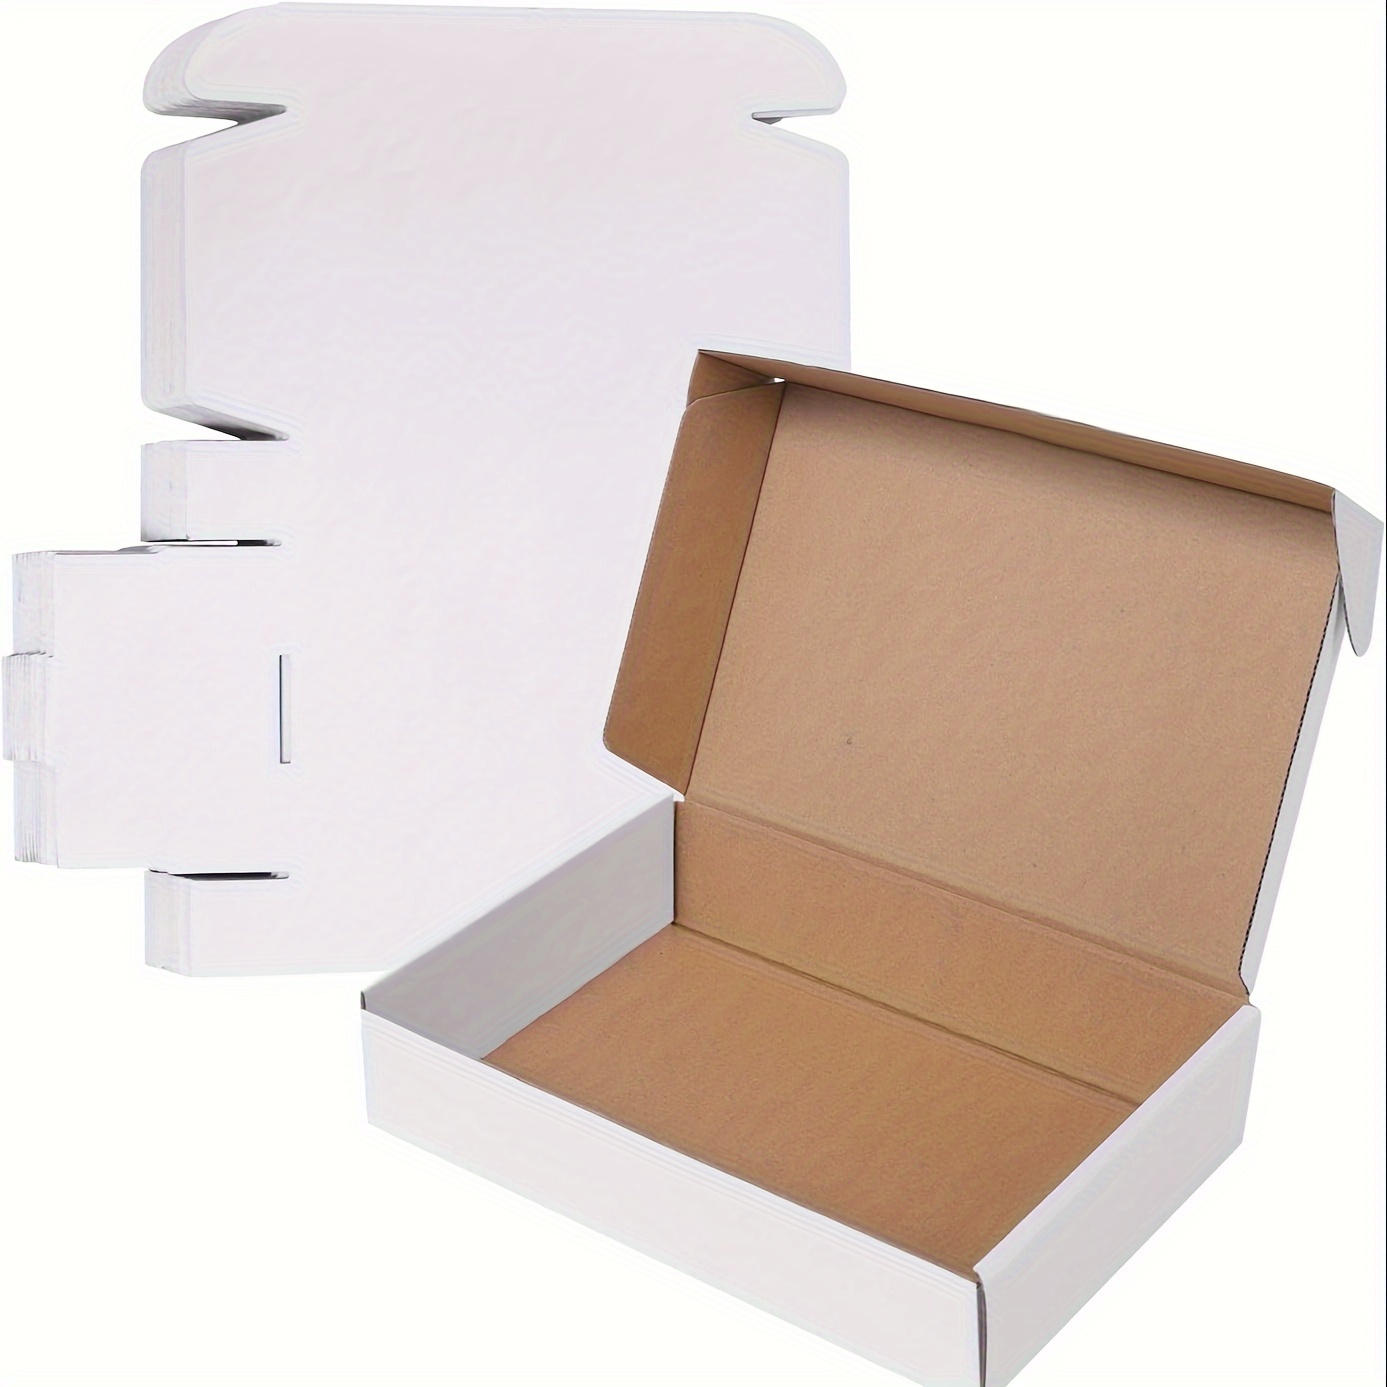  Cajas de cartón para mudanza : Productos de Oficina